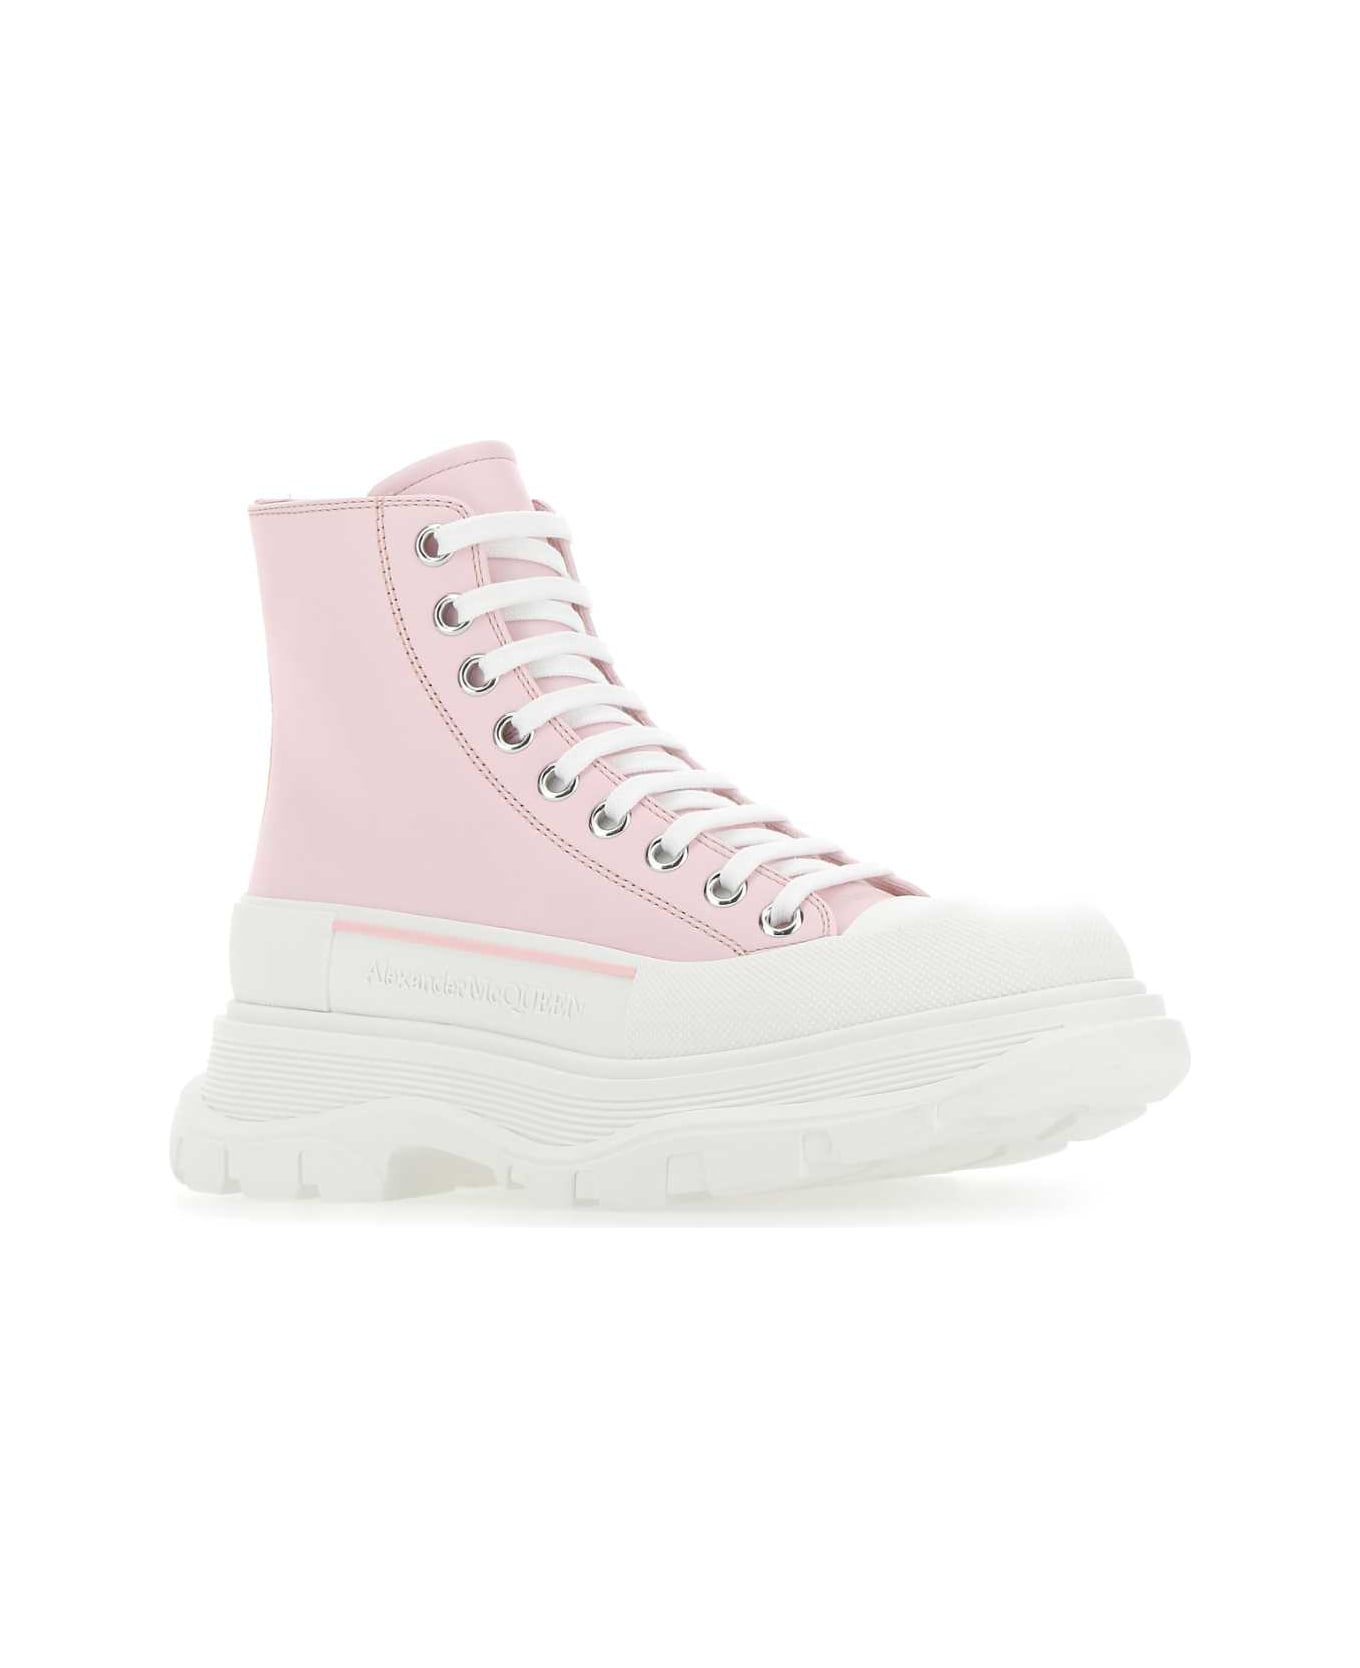 Alexander McQueen Pastel Pink Leather Tread Slick Sneakers - 5805